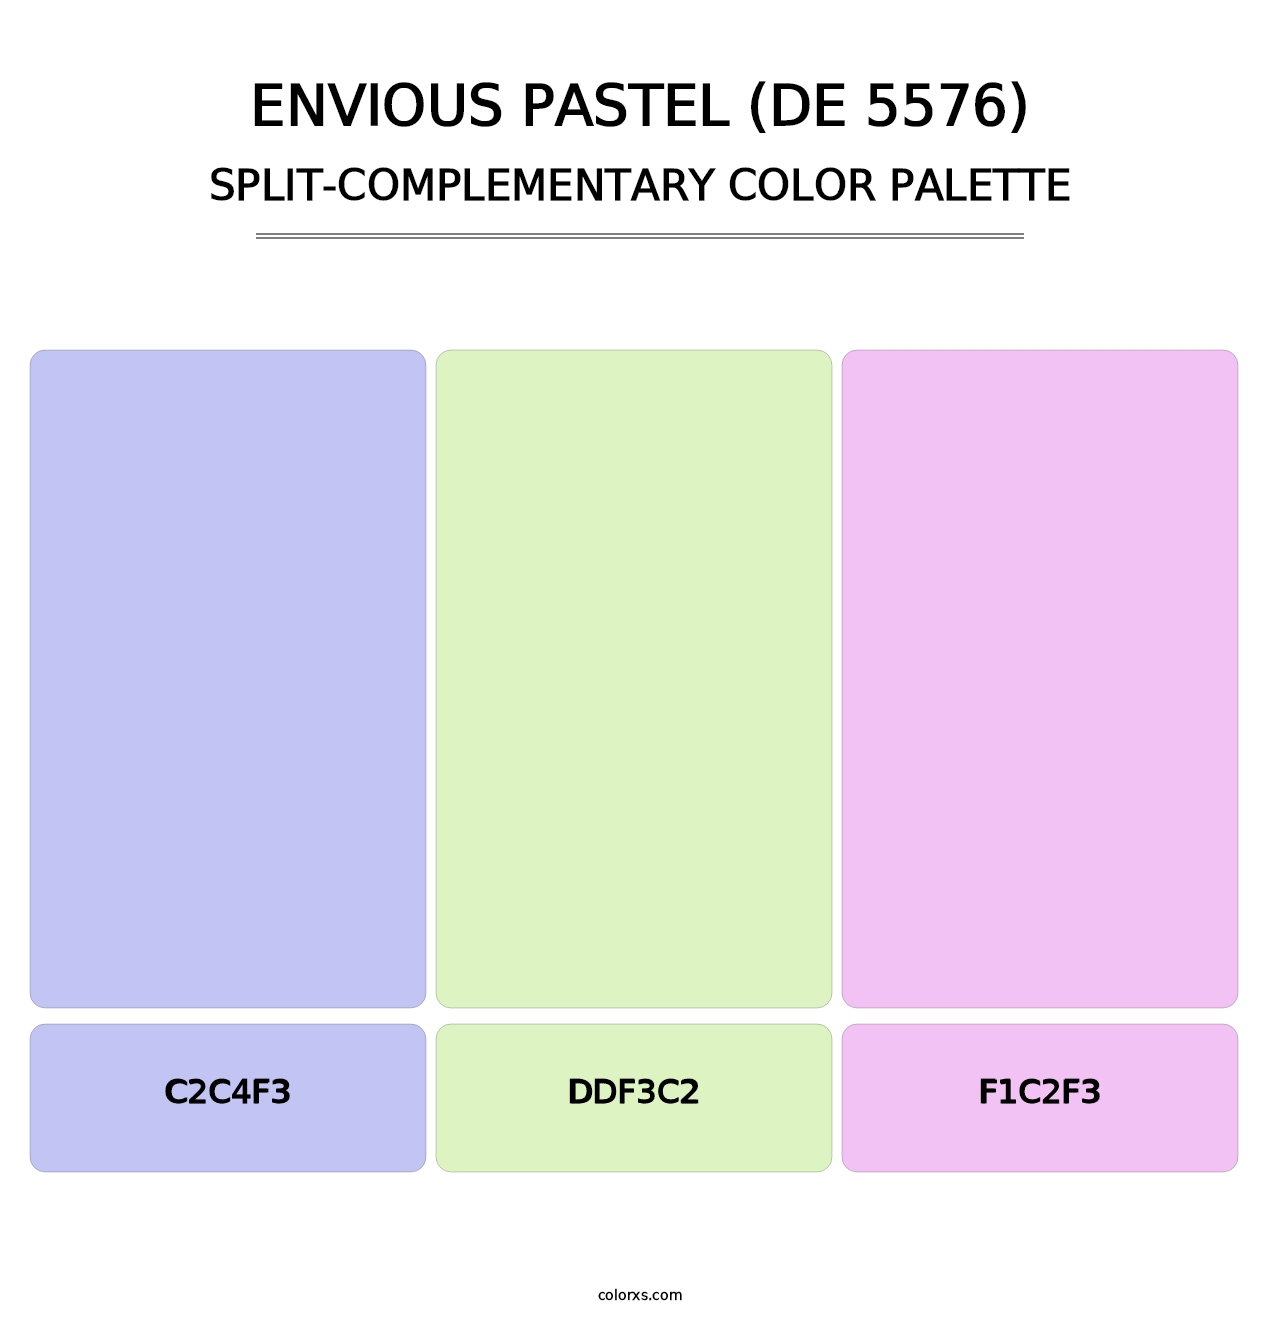 Envious Pastel (DE 5576) - Split-Complementary Color Palette